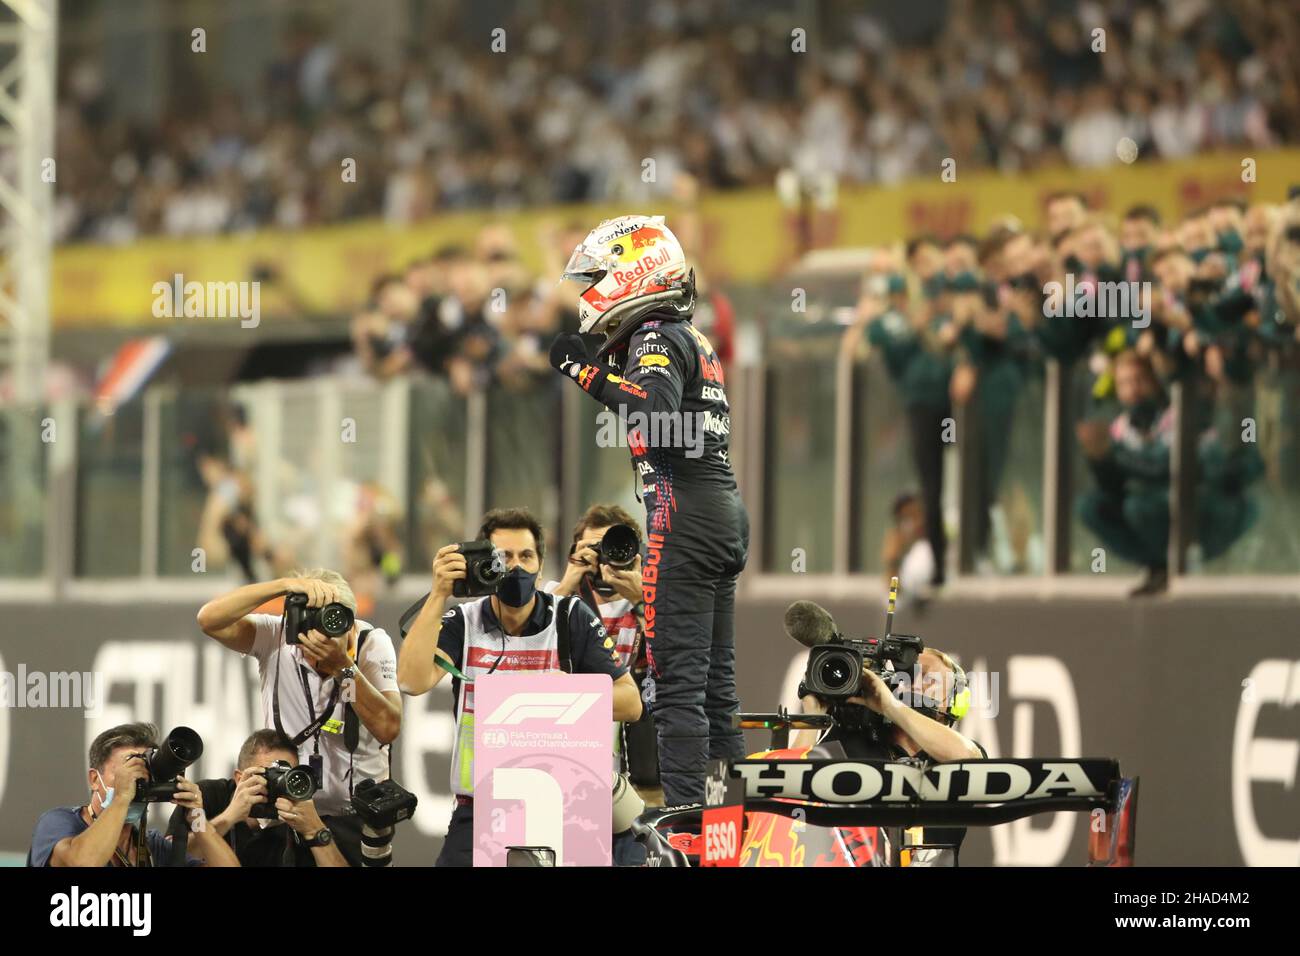 12th. Dezember 2021; Yas Marina Circuit, Abu Dhabi, Vereinigte Arabische Emirate: FIA Abu Dhabi F1 Grand Prix Renntag: Red Bull Racing Honda, Max Verstappen gewinnt das Rennen und 2021 FIA F1 Weltmeisterschaft Stockfoto